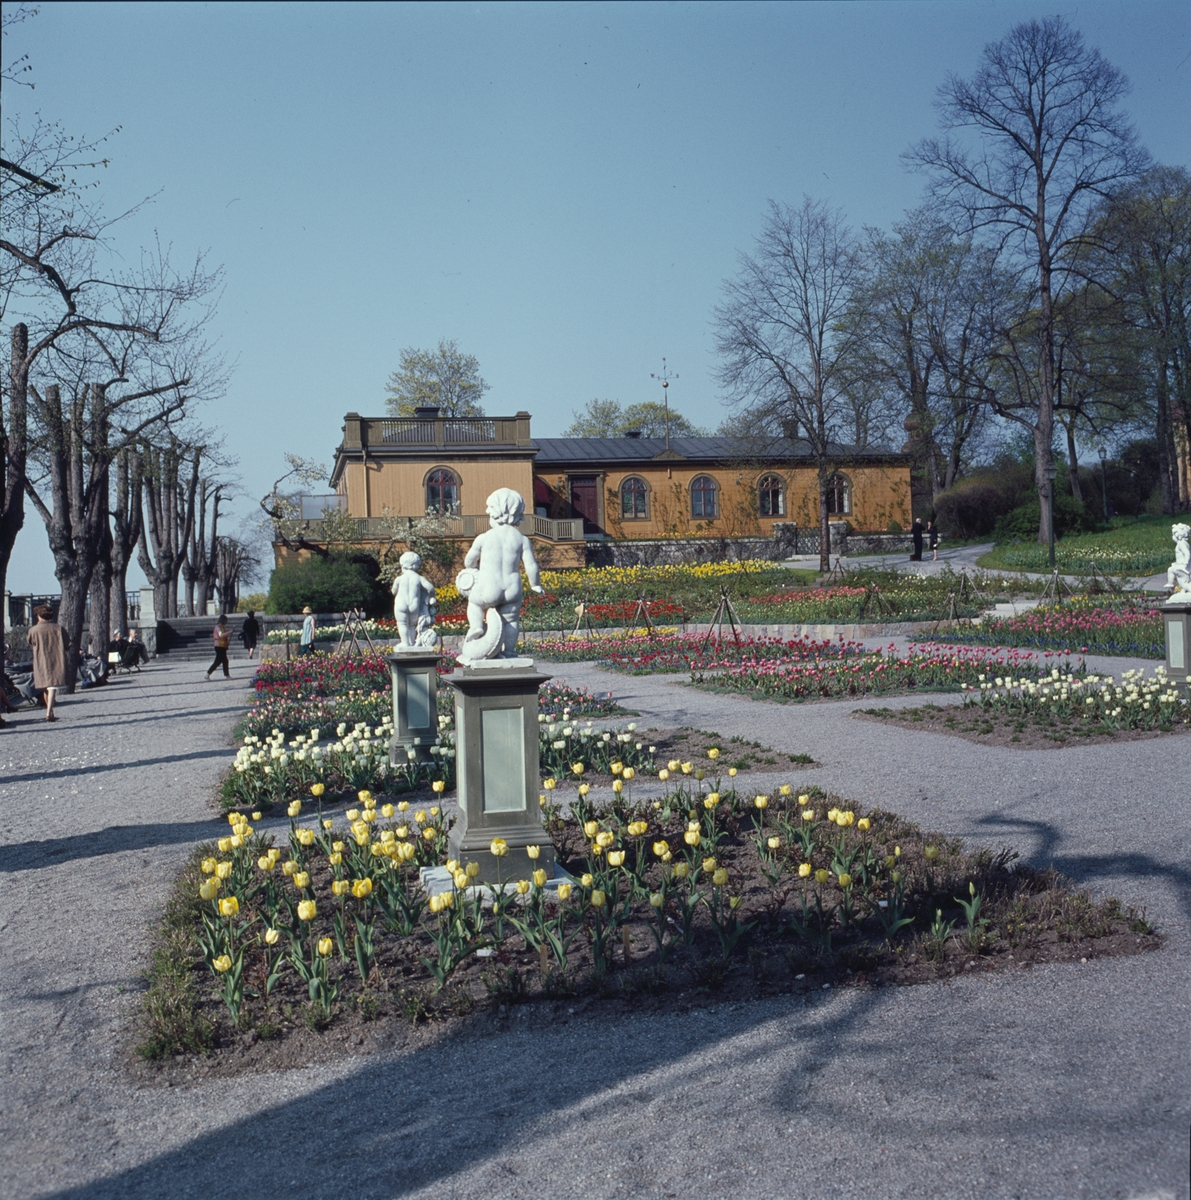 Blommande vårblommor i Rosenträdgårdens välskötta rabatter. I bakgrunden syns Sagaliden och i förgrunden ett par figurer placerade i rabatterna.